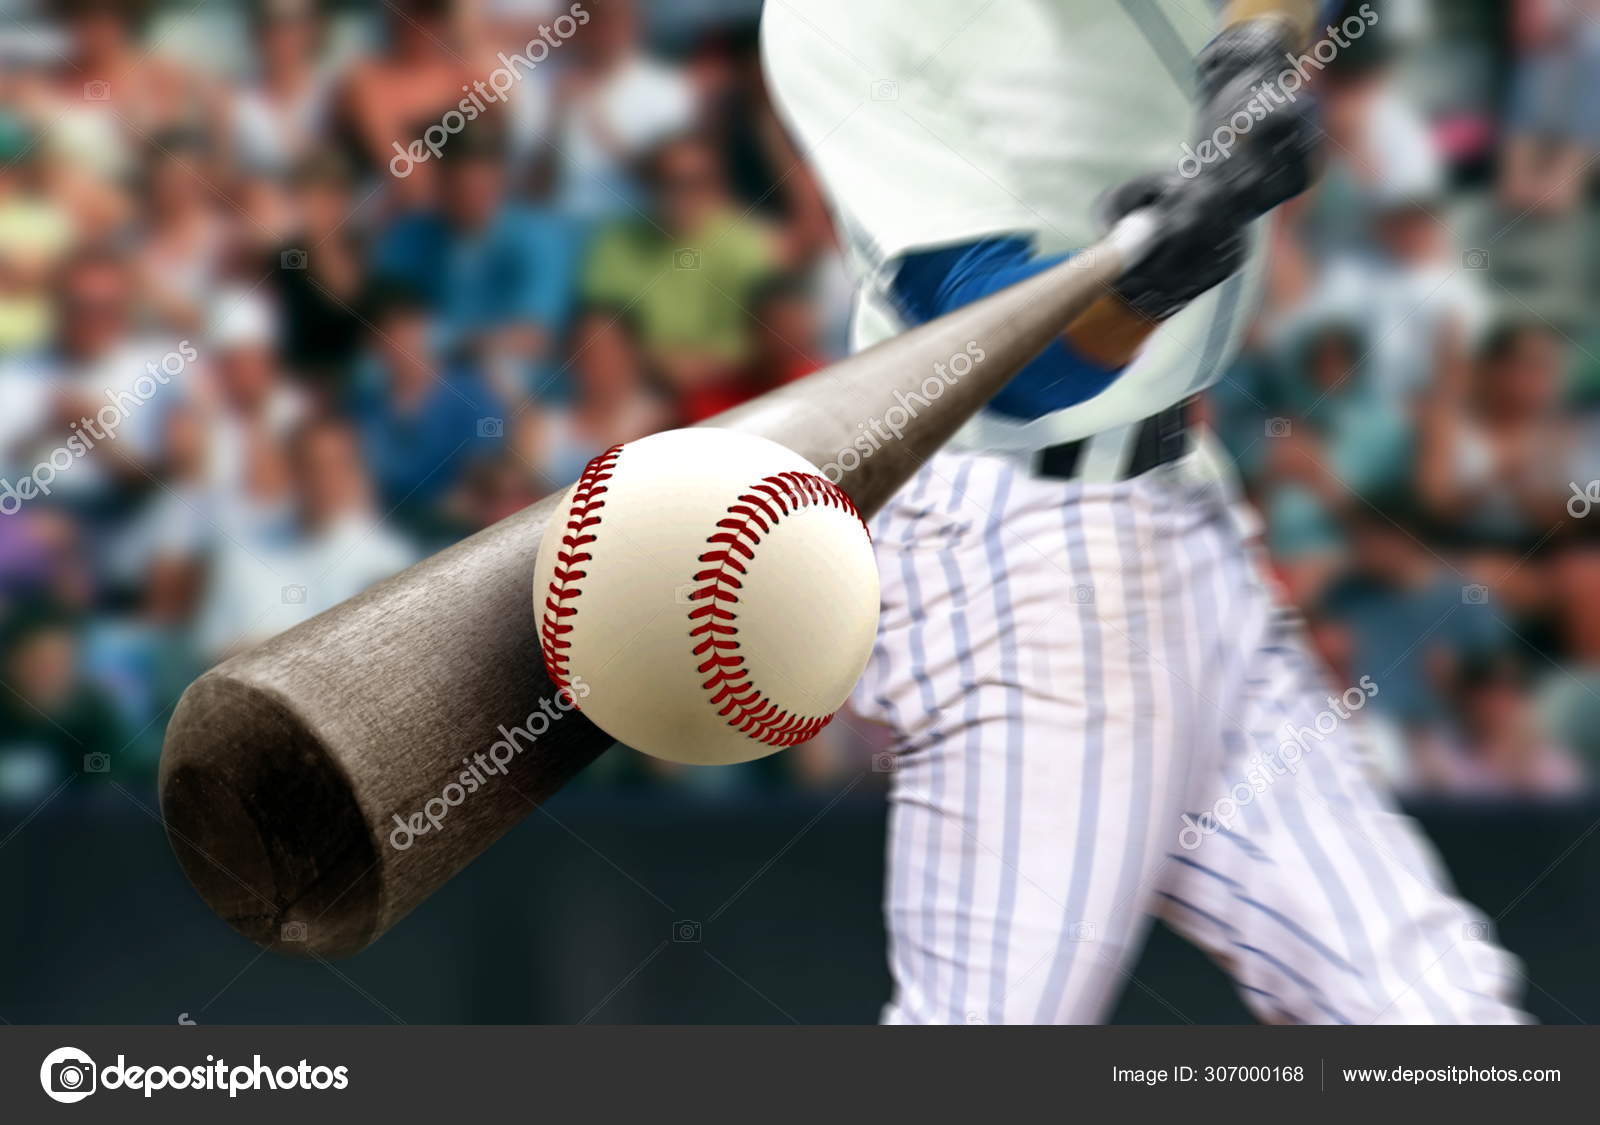 Hitting balls bat